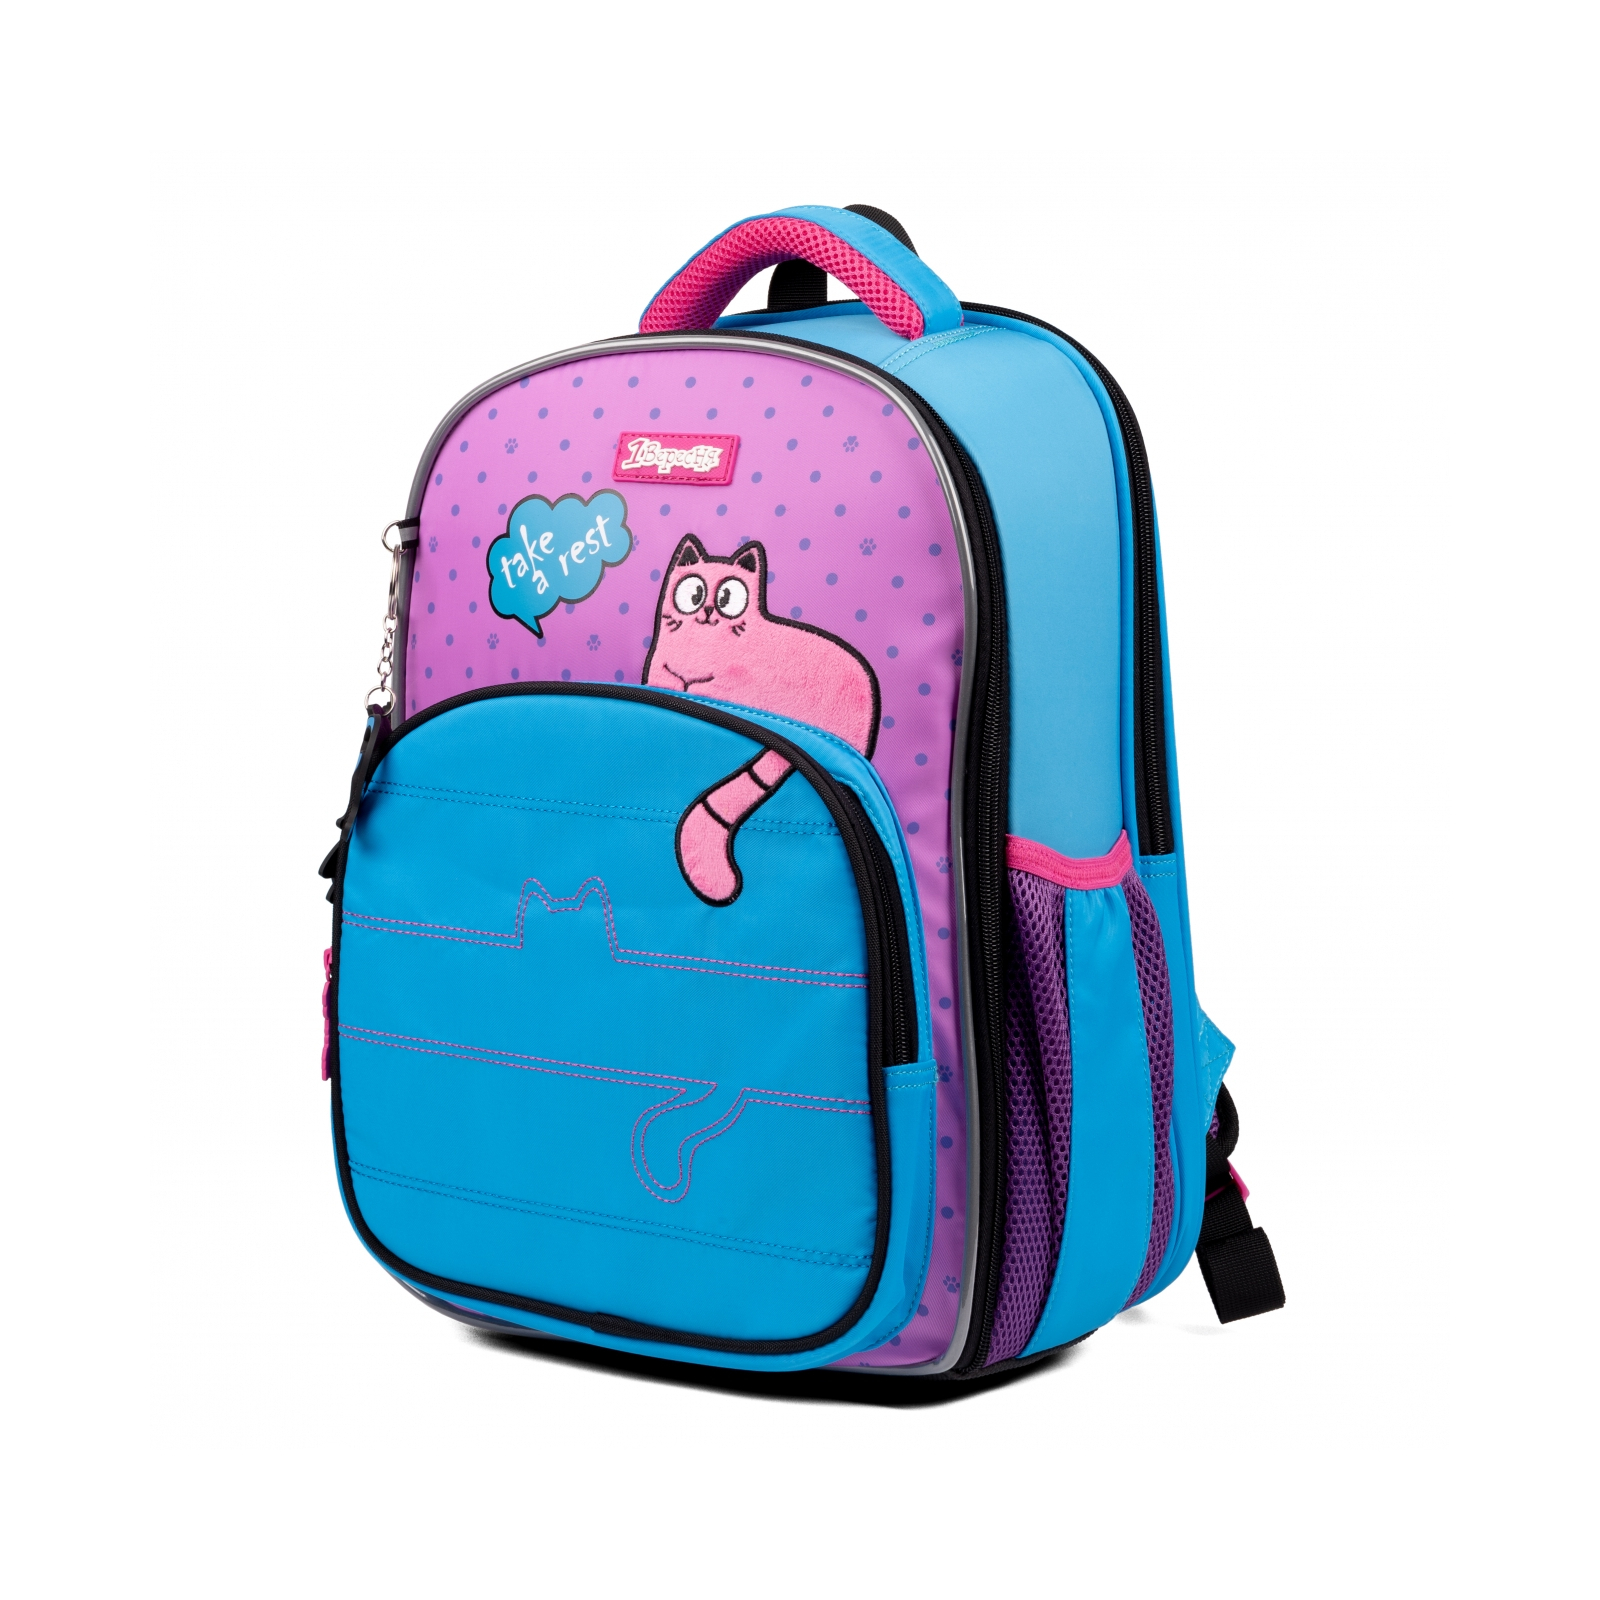 Рюкзак школьный 1 вересня S-97 Pink and Blue (559493) изображение 2